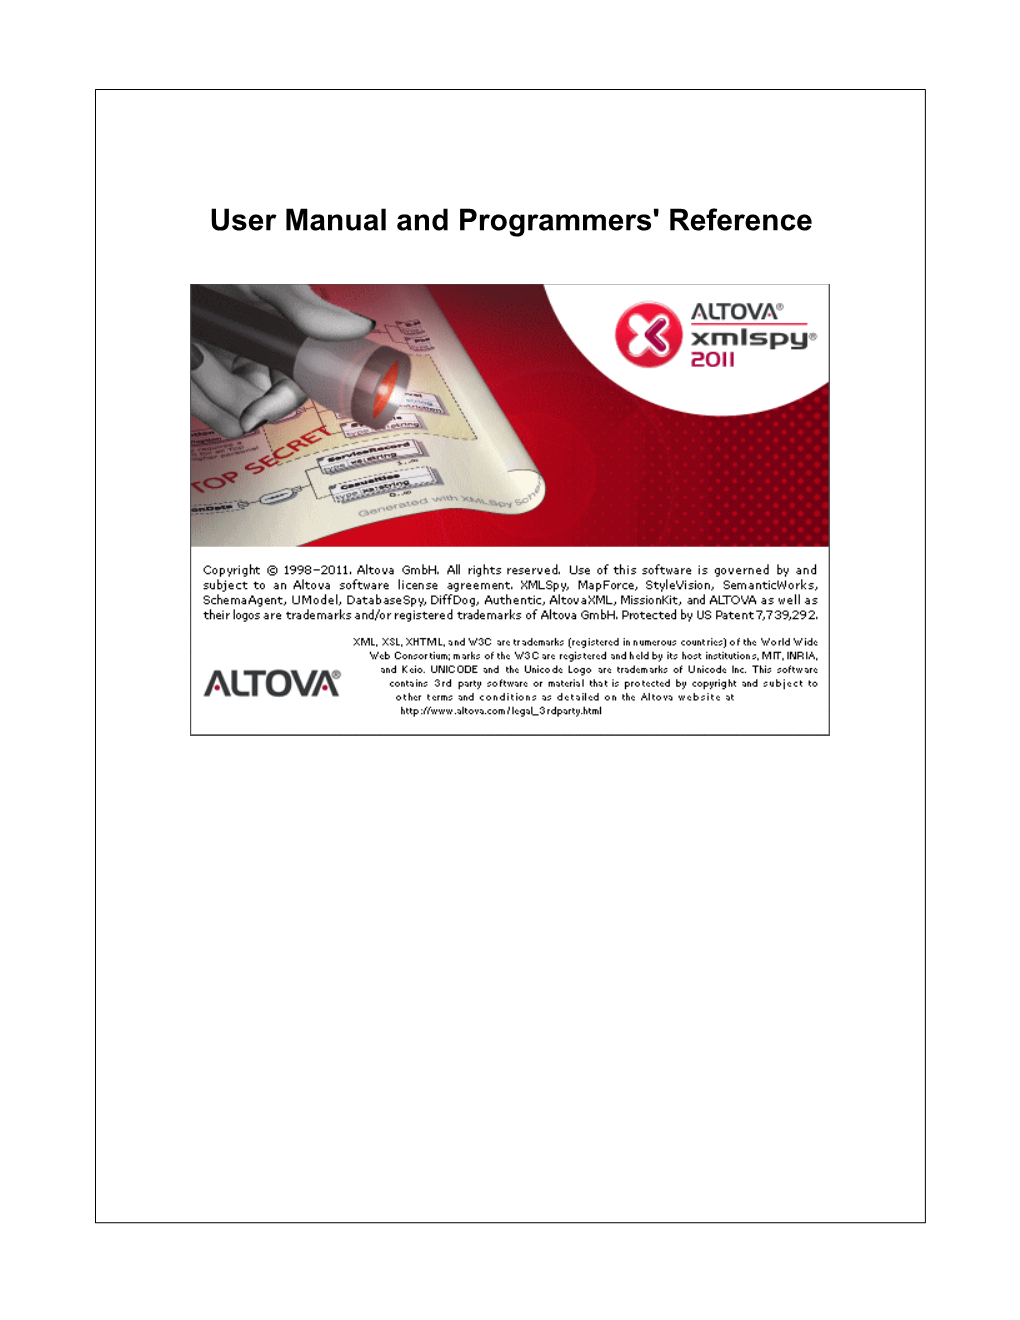 Altova Xmlspy 2011 User & Reference Manual